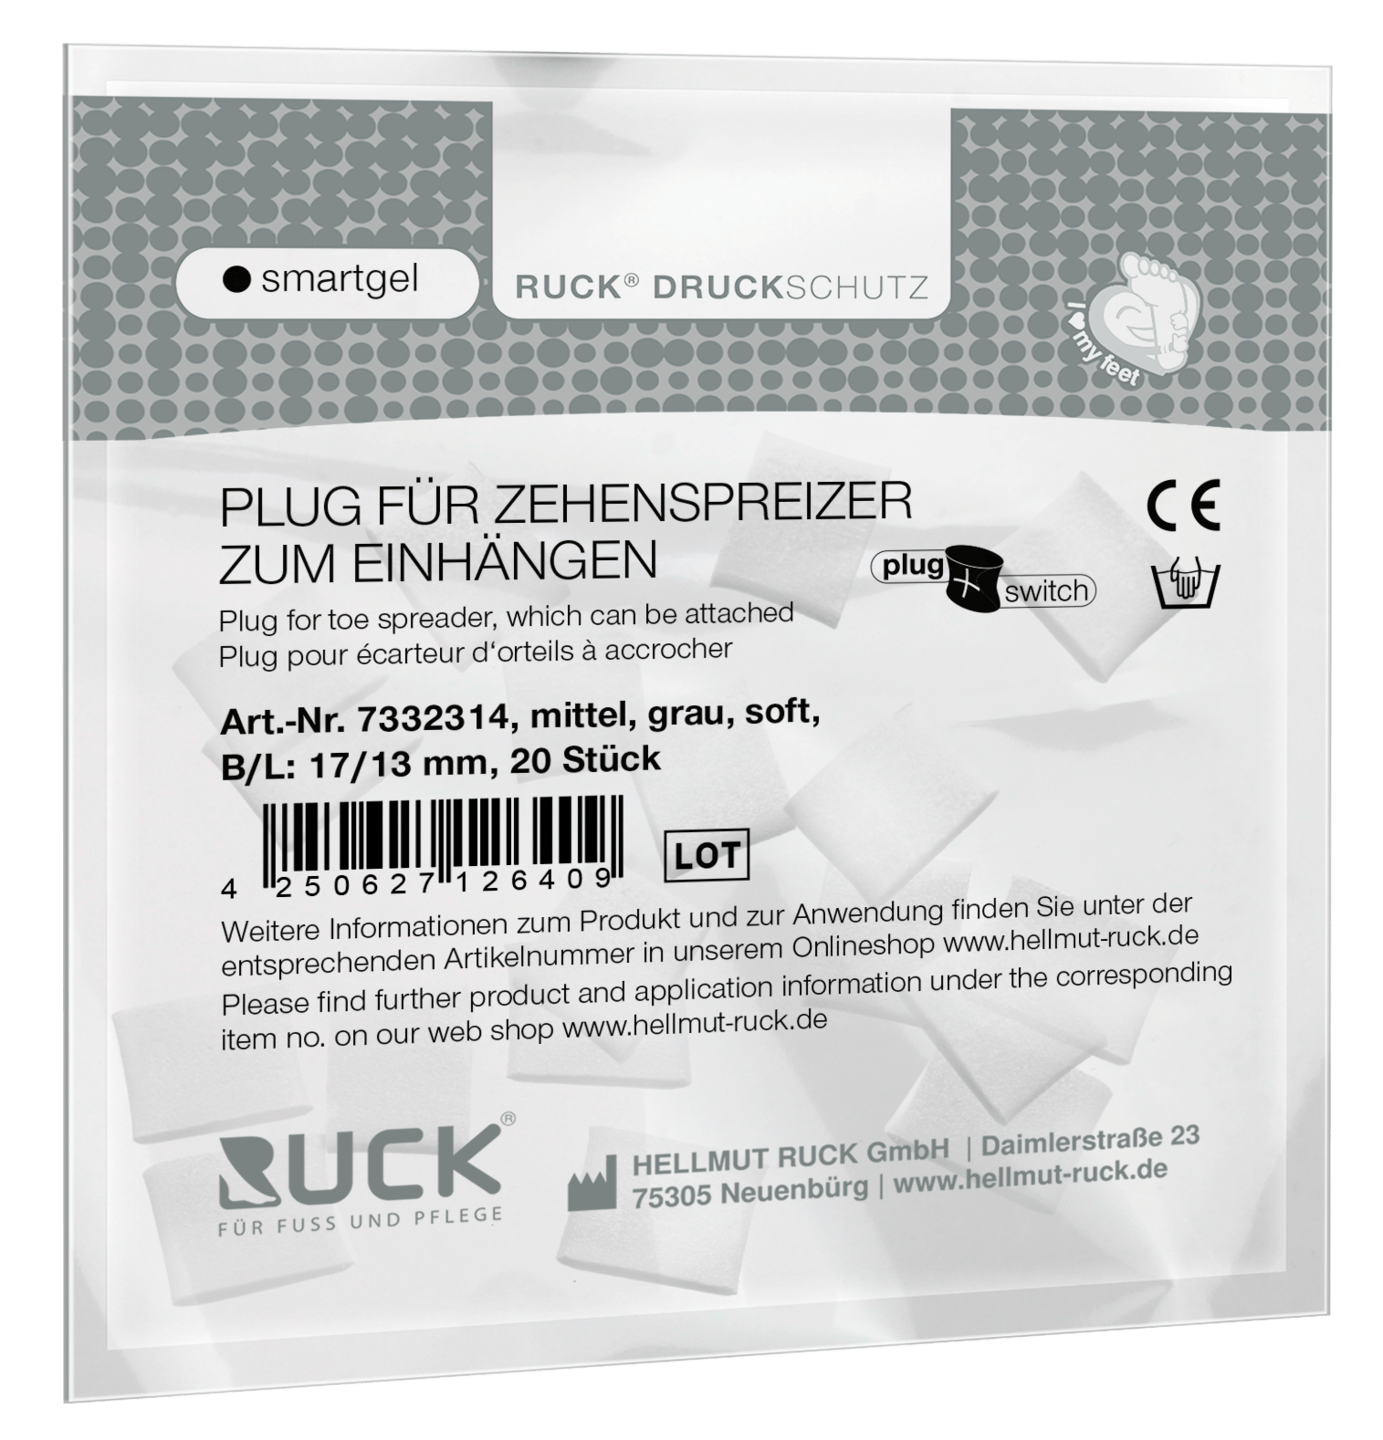 RUCK DRUCKSCHUTZ - Plugs für RUCK® DRUCKSCHUTZ smartgel plug+switch Zehenspreizer zum Einhängen in grau